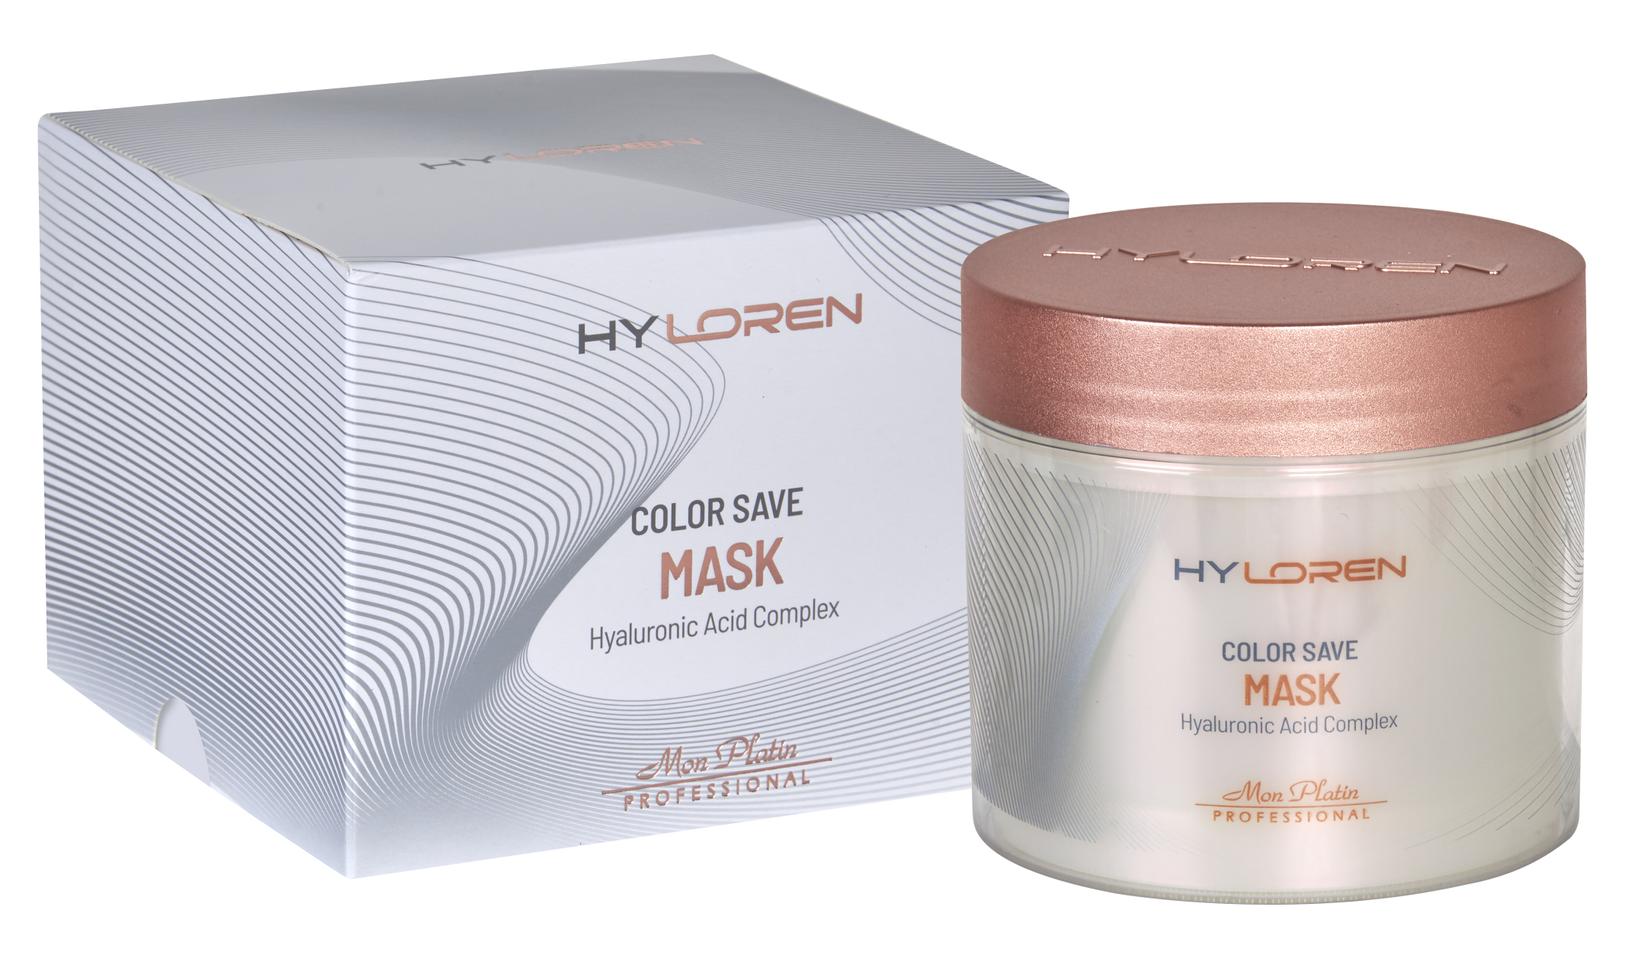 MON PLATIN Maska za kosu Hyloren Premium za suvu i farbanu kosu 500ml